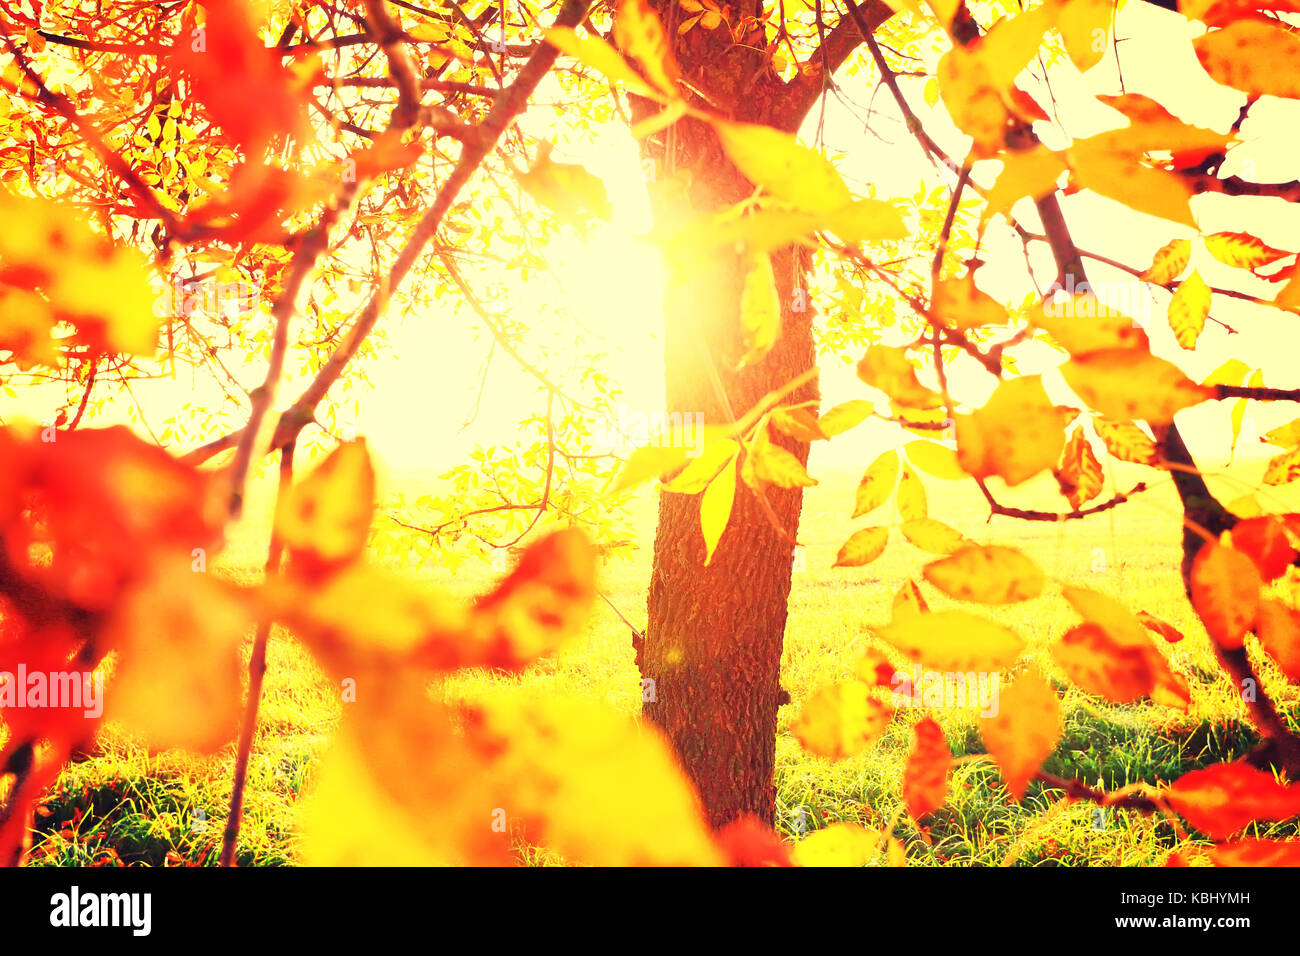 Herbst Hintergrund. Buntes Laub. Rote und gelbe Blätter durch die helle Sonne beleuchtet. Stockfoto